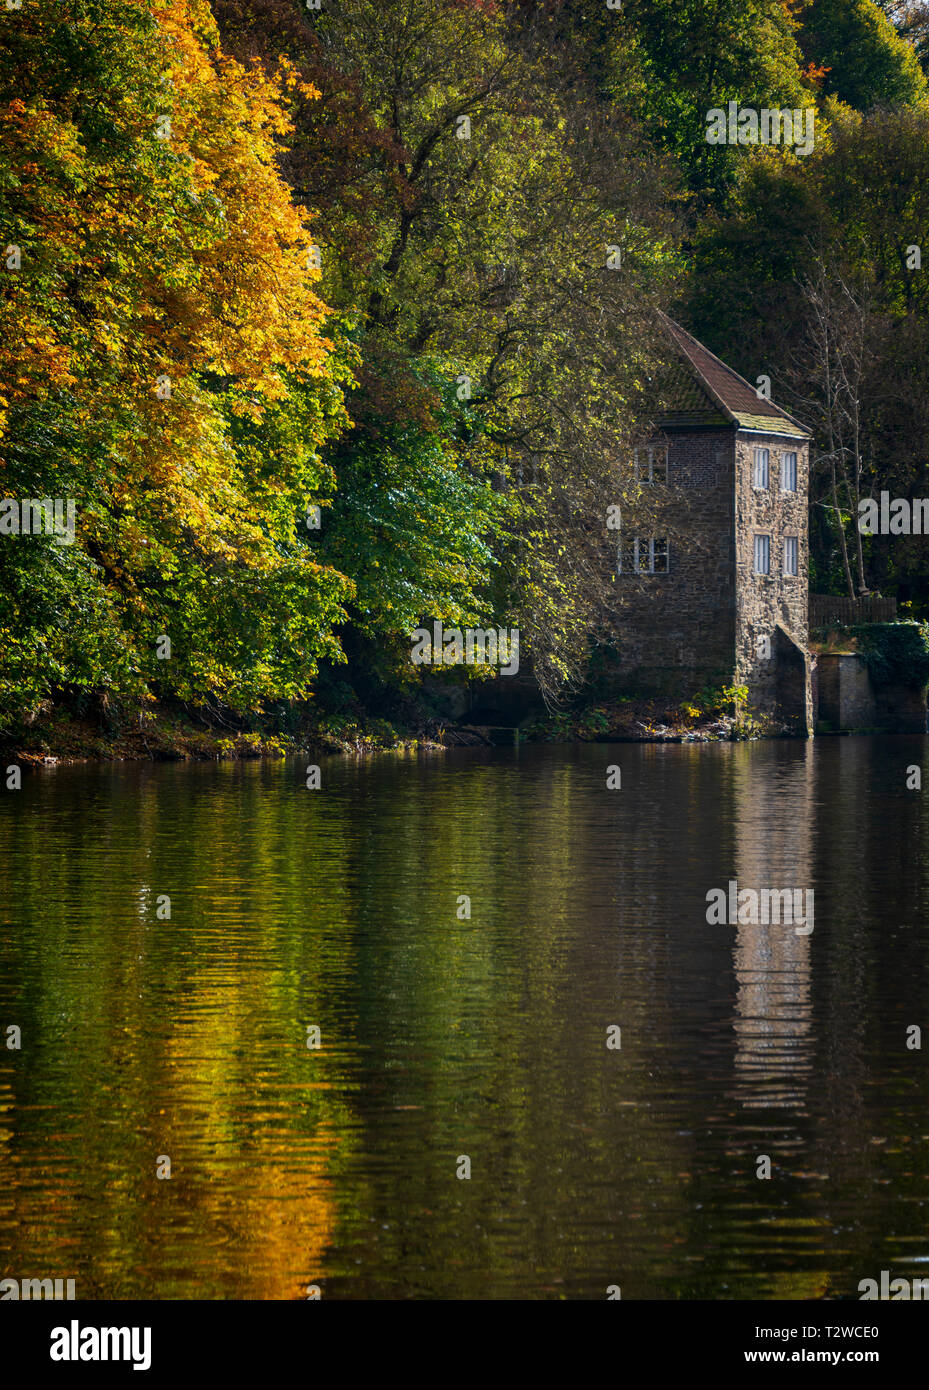 Vecchio Fulling Mill tra gli alberi d'autunno sulle rive del fiume indossare il vecchio edificio in pietra è stata utilizzata in precedenza come un museo dall Università di Durham Foto Stock